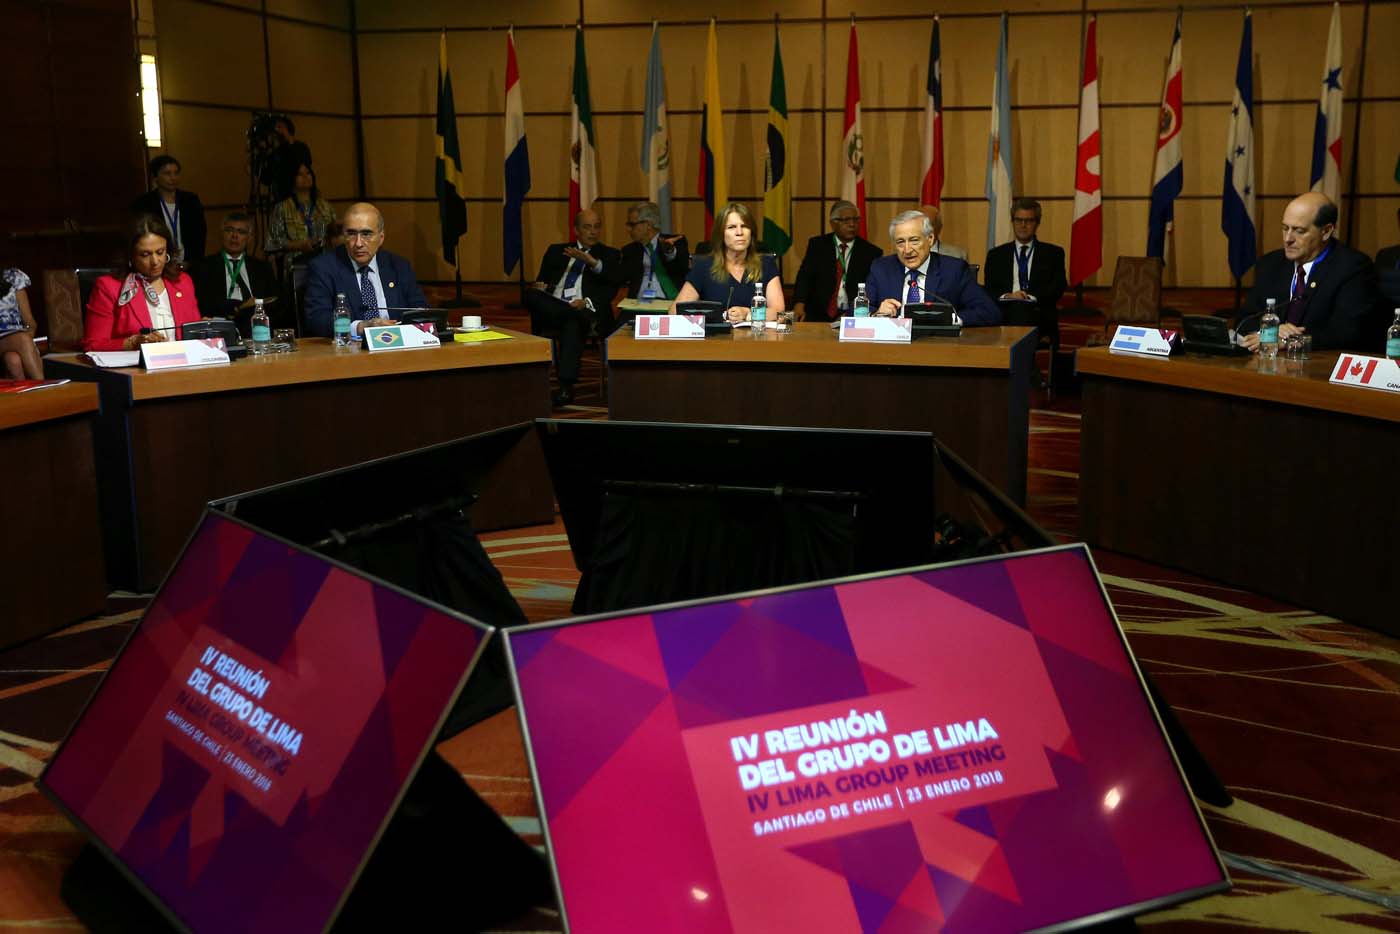 España participará como invitada en la reunión del Grupo de Lima sobre Venezuela